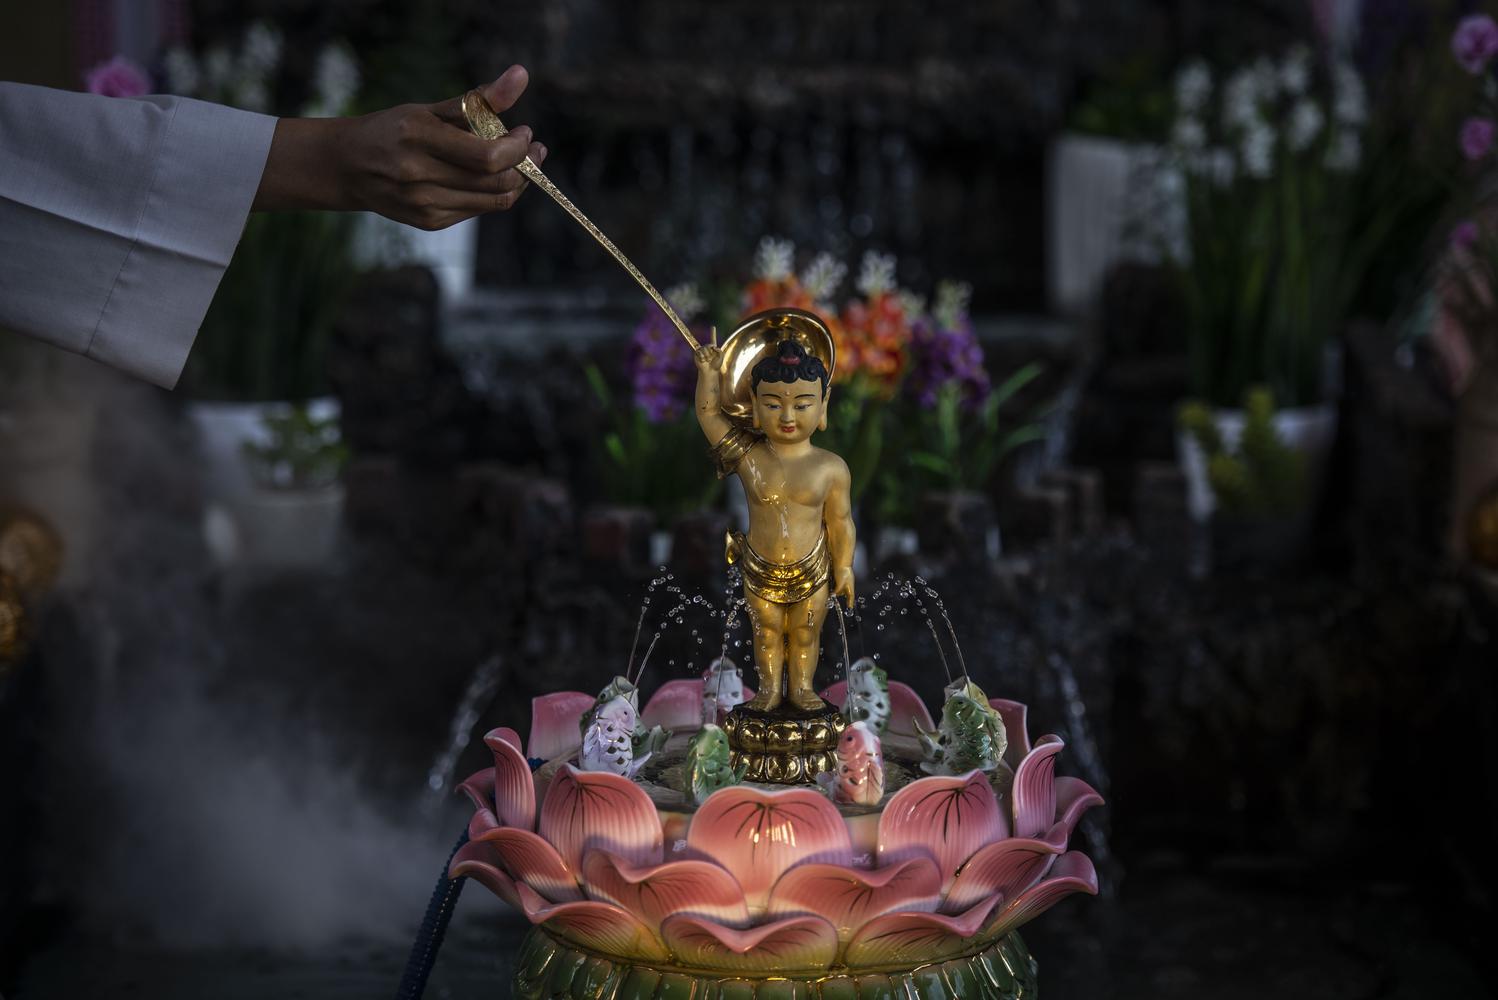 Samaneri memandikan patung Buddha di Vihara Lalitavistara, Cilincing, Jakarta, Rabu (25/5/2021). Pesiapan tersebut dilakukan untuk menyambut rangkaian Hari Raya Waisak 2565 BE pada 26 Mei 2021 yang akan berlangsung secara virtual.